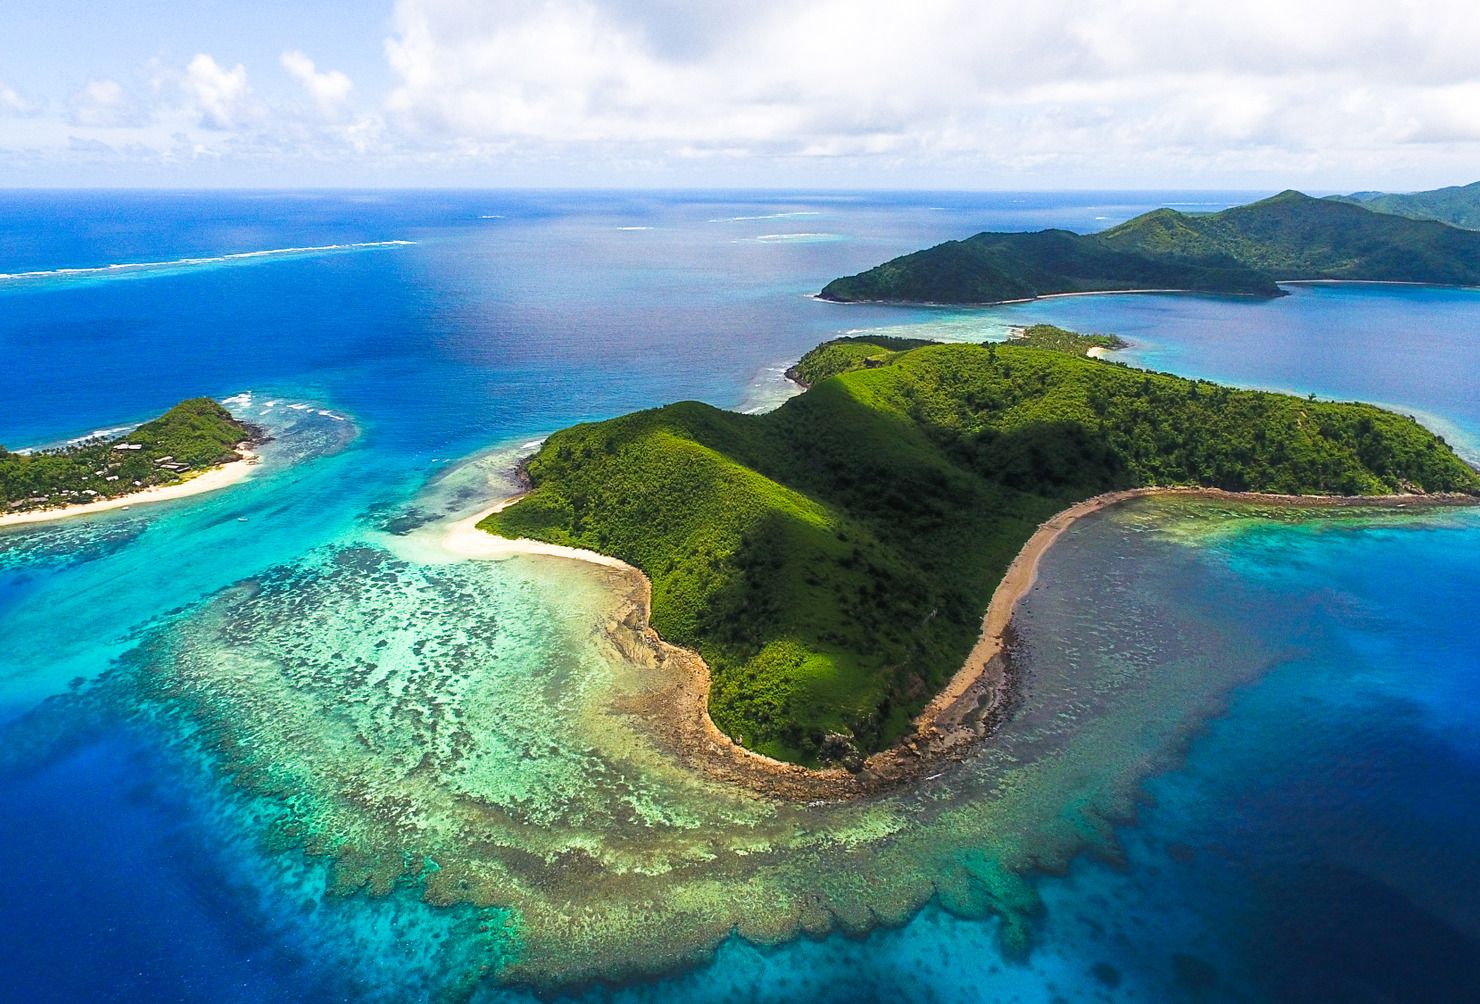 Океан и два острова. Фиджи Маманука. Острова Ясава Фиджи. Острова Лау, Фиджи. Архипелаг Фиджи.